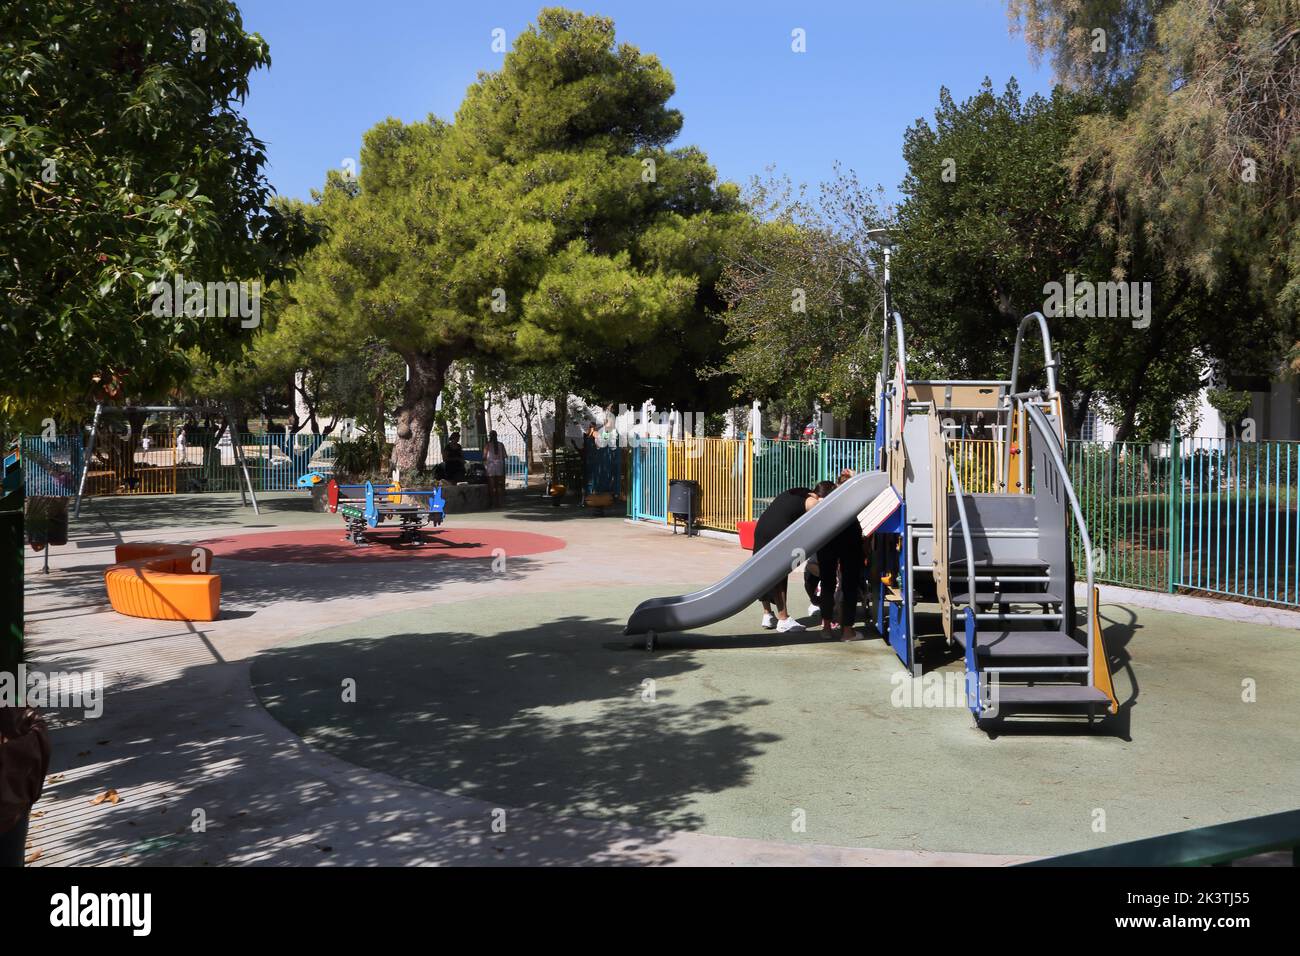 Vouliagmeni Athen Griechenland Thiseos Straße Rutsche auf dem Spielplatz Stockfoto